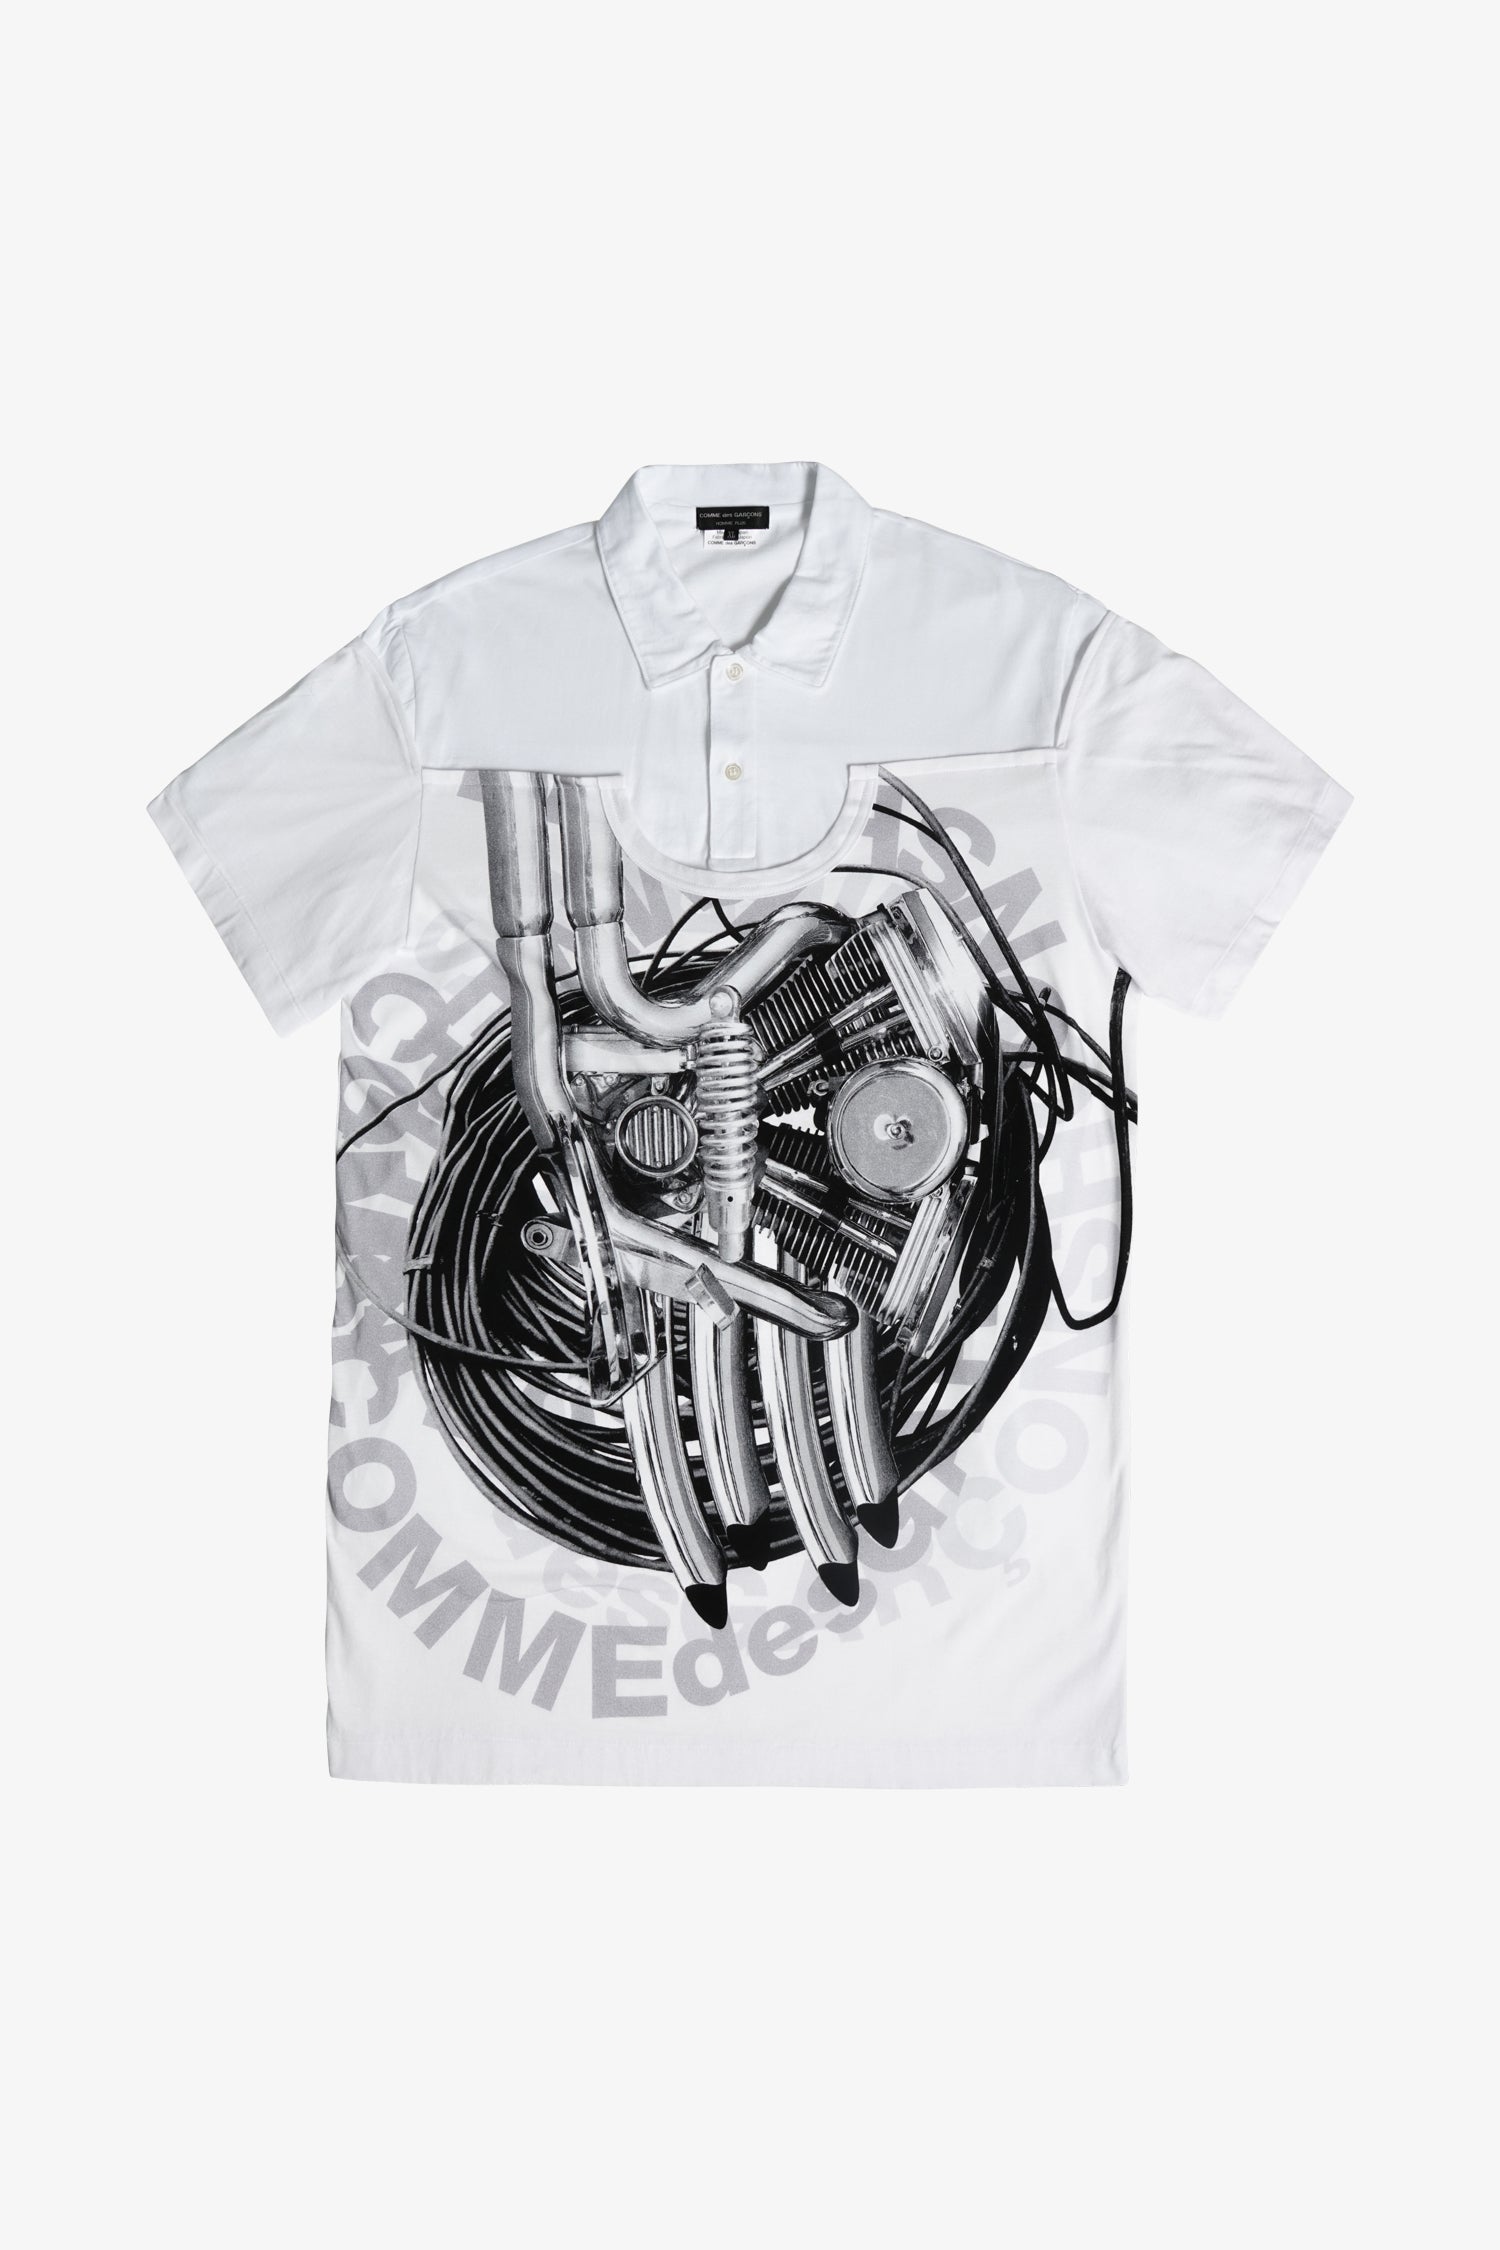 Selectshop FRAME - COMME DES GARÇONS HOMME PLUS Collar Layered T-Shirt T-shirt Dubai